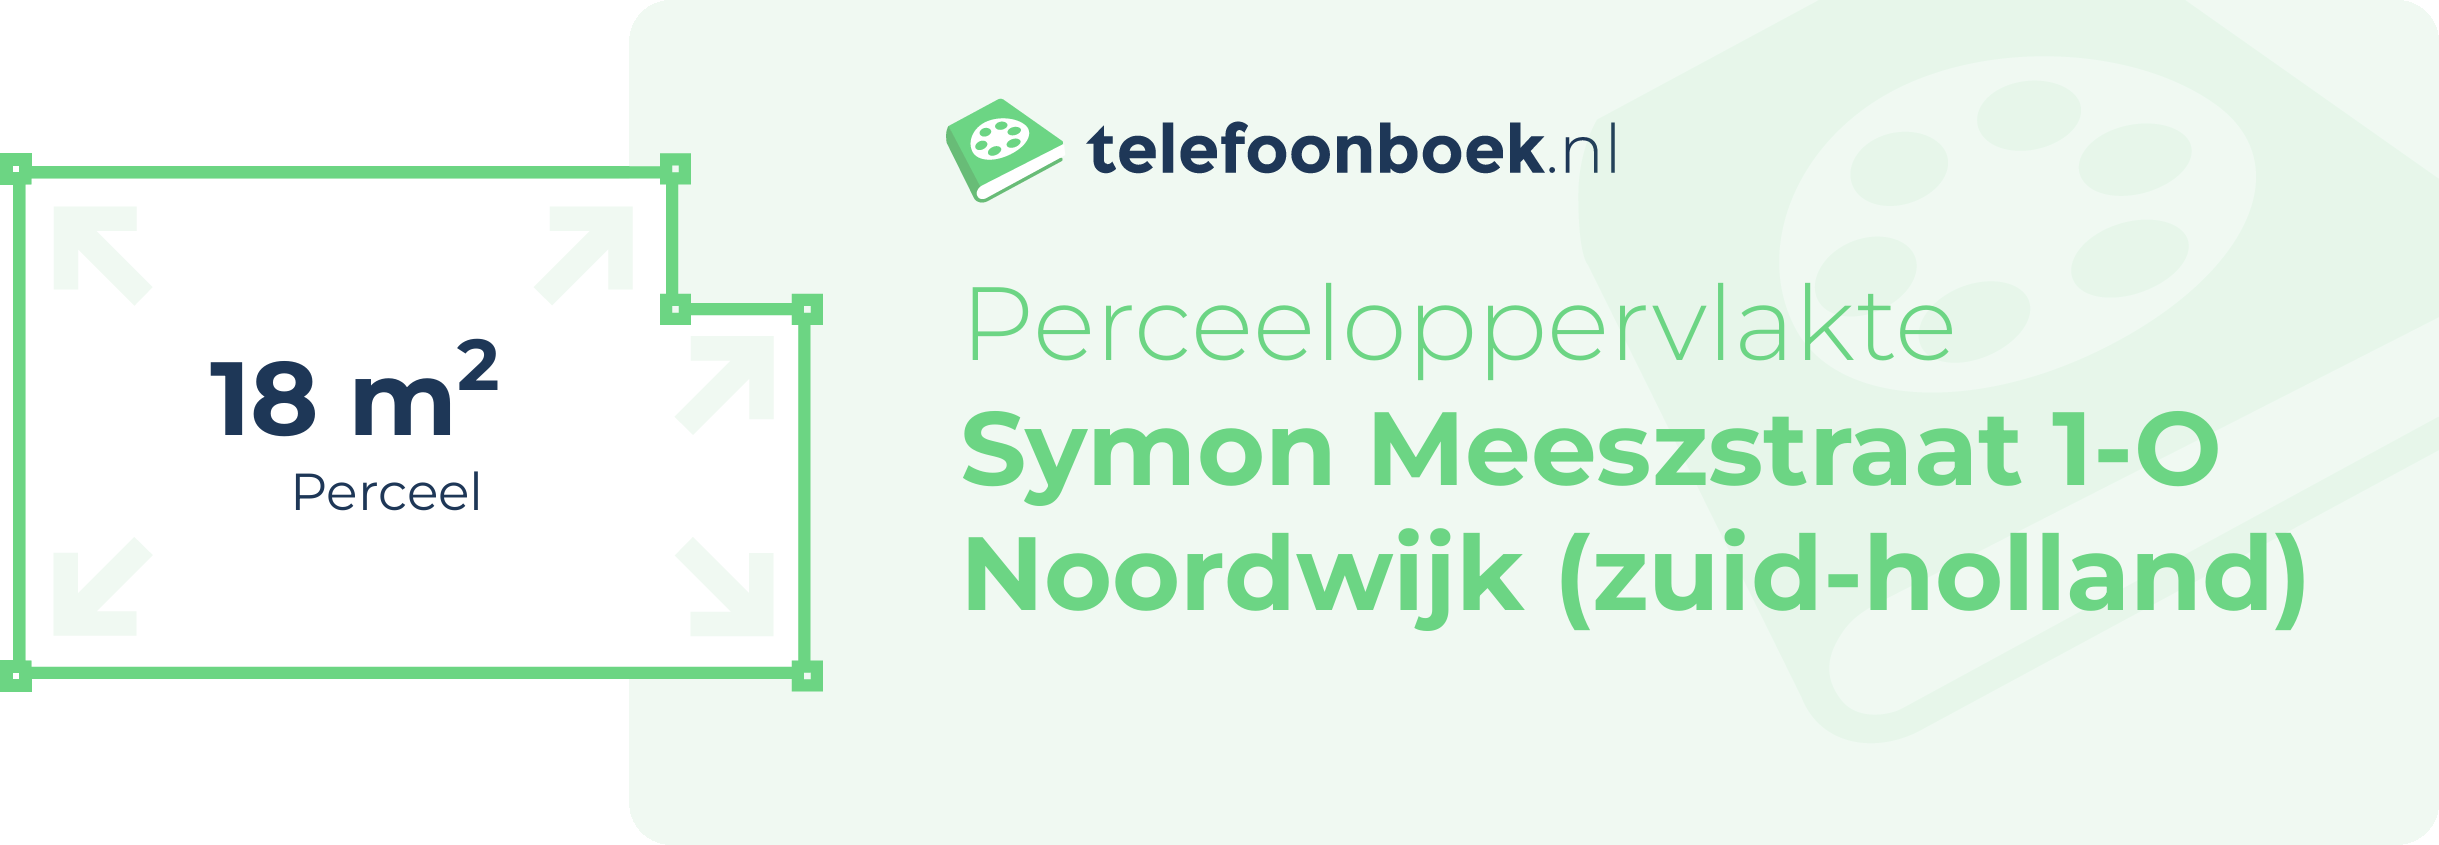 Perceeloppervlakte Symon Meeszstraat 1-O Noordwijk (Zuid-Holland)